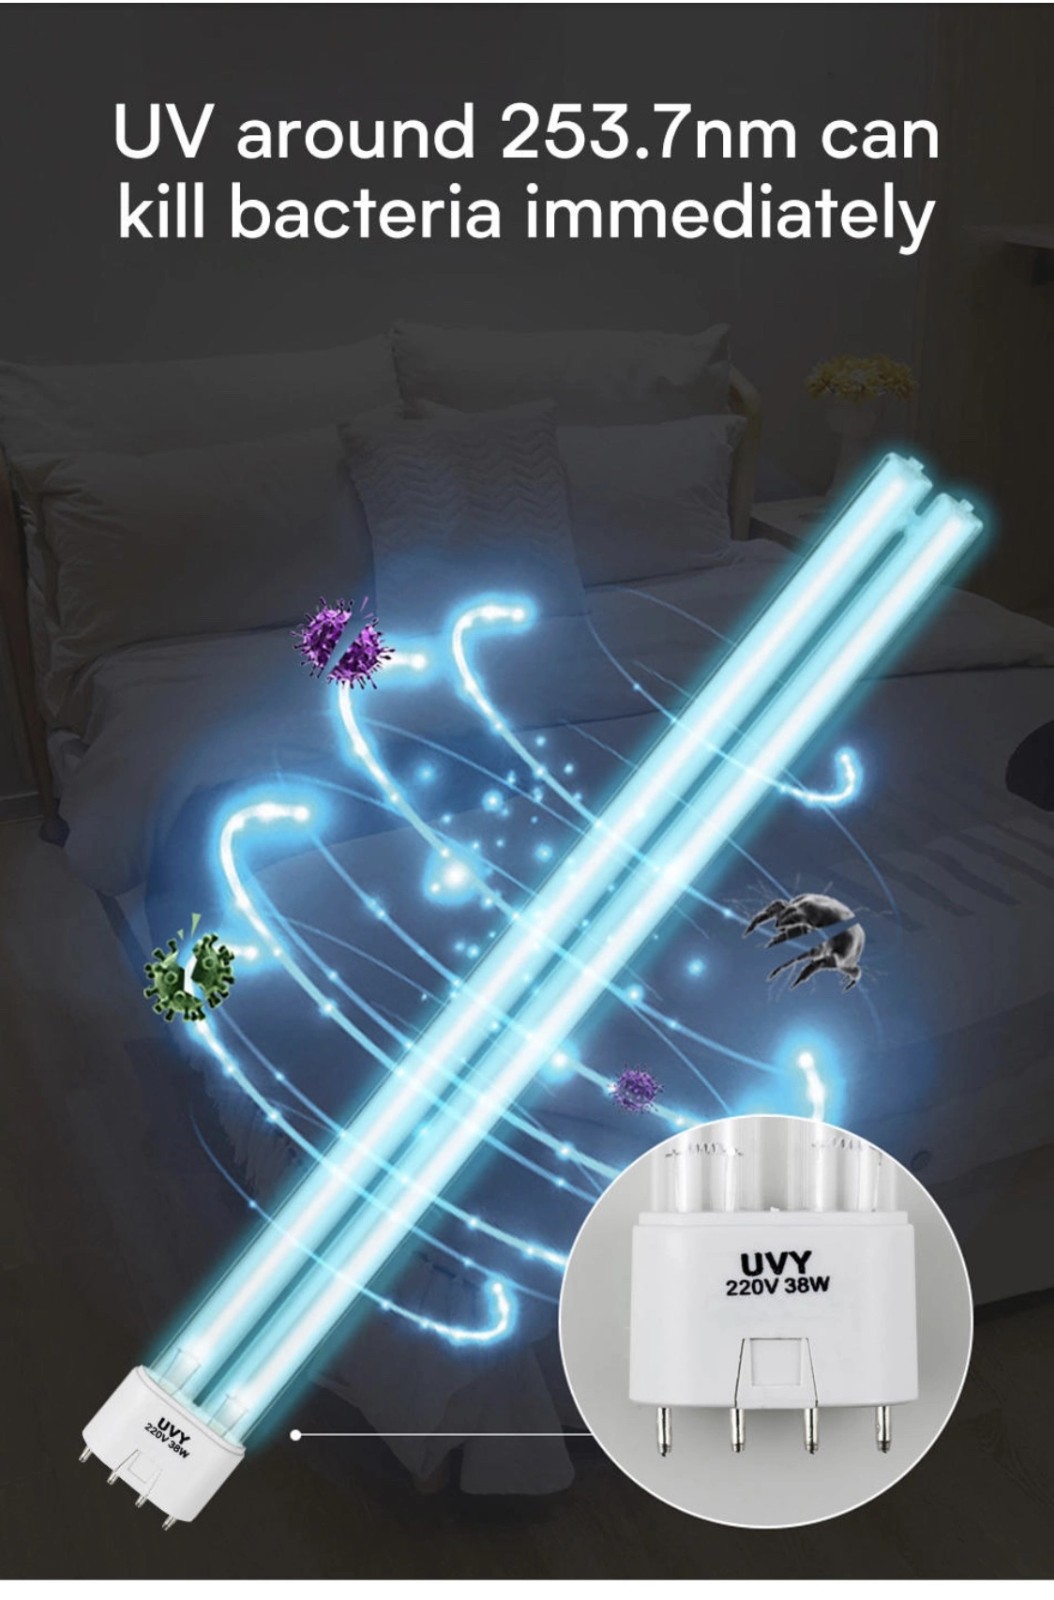 Litel Technology Beliebte UV-Lichtdose für Sterilisation-6